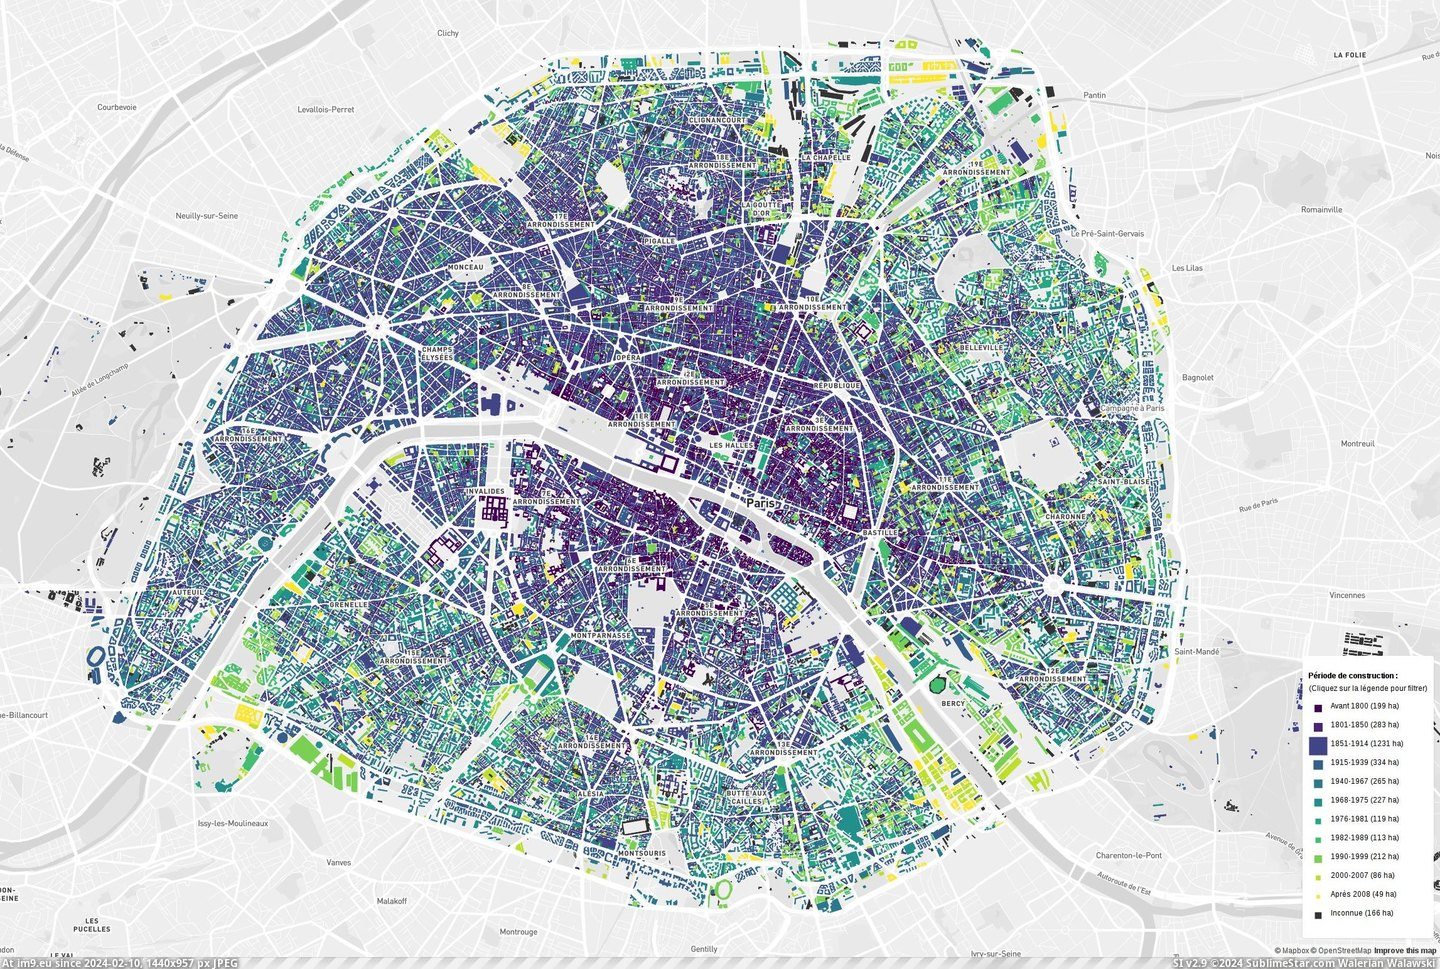 #Paris #Buildings #Construction [Mapporn] Paris buildings, by construction date [2294x1537] Pic. (Bild von album My r/MAPS favs))